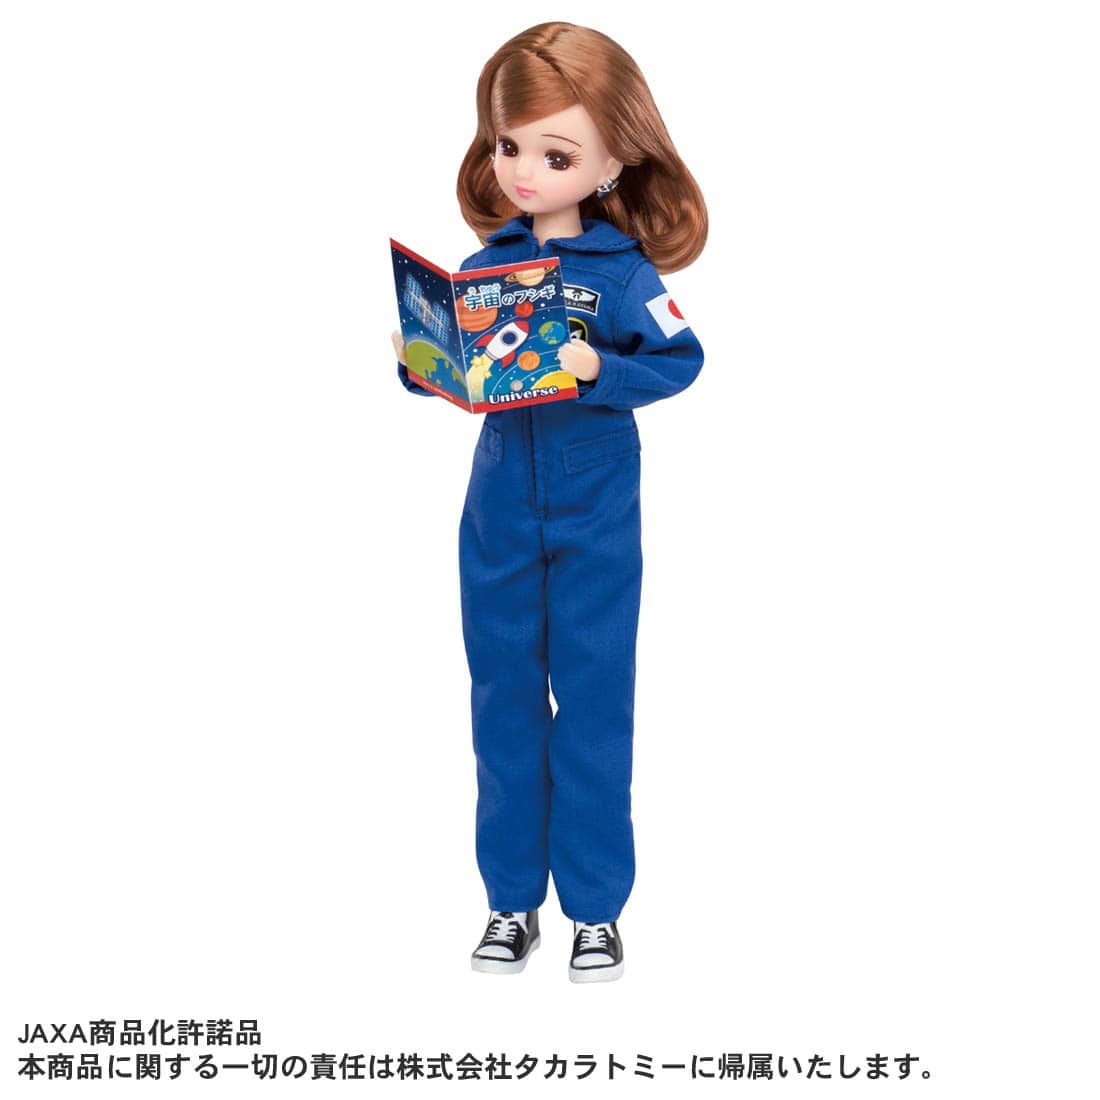 リカちゃん人形『あこがれの宇宙飛行士 リカちゃん』完成品ドール-002